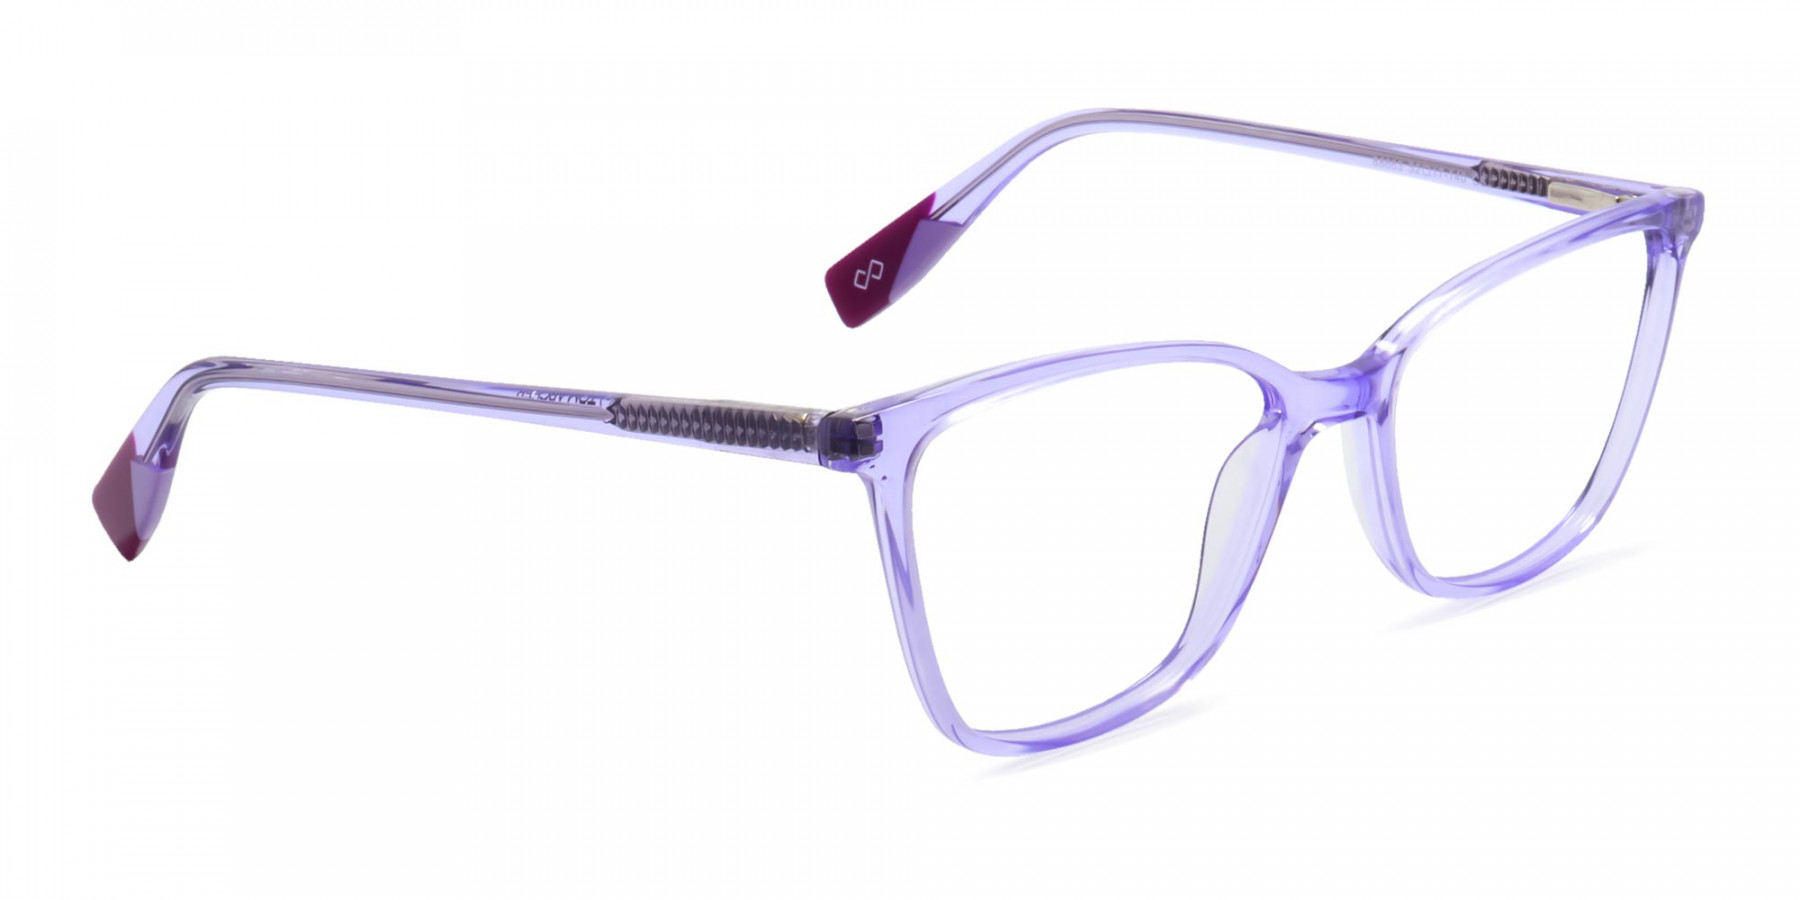 DORRIDGE 6 - Buy Clear Frame Butterfly Glasses | Specscart.®